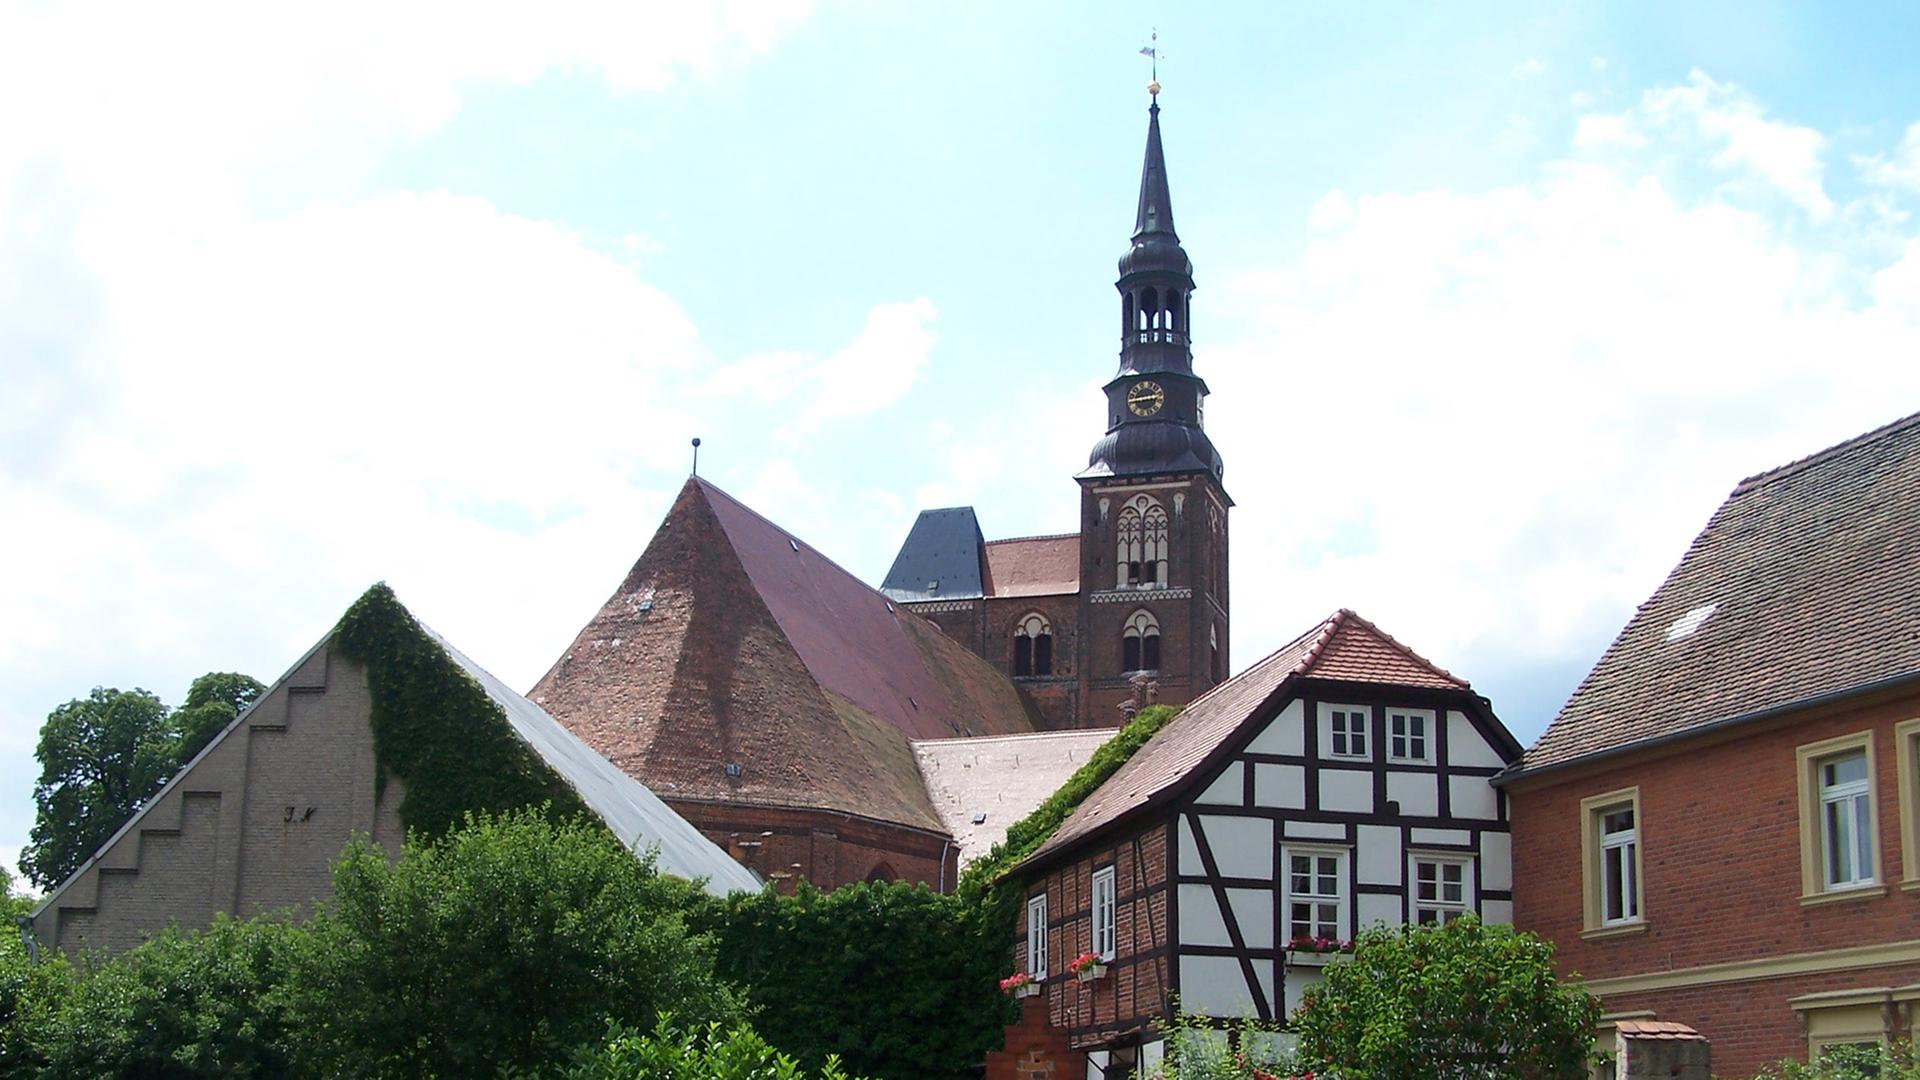 Blick auf die Kirche St. Stephan in Tangermünde, der Hansestadt an der Elbe, aufgenommen am 16.06.2008. Der Turm der im 14. Jahrhundert umgebauten gotischen Hallenkirche ist der höchste Kirchenturm in der Altmark. Das gotische Dachgewölbe ist 600 Jahre alt.